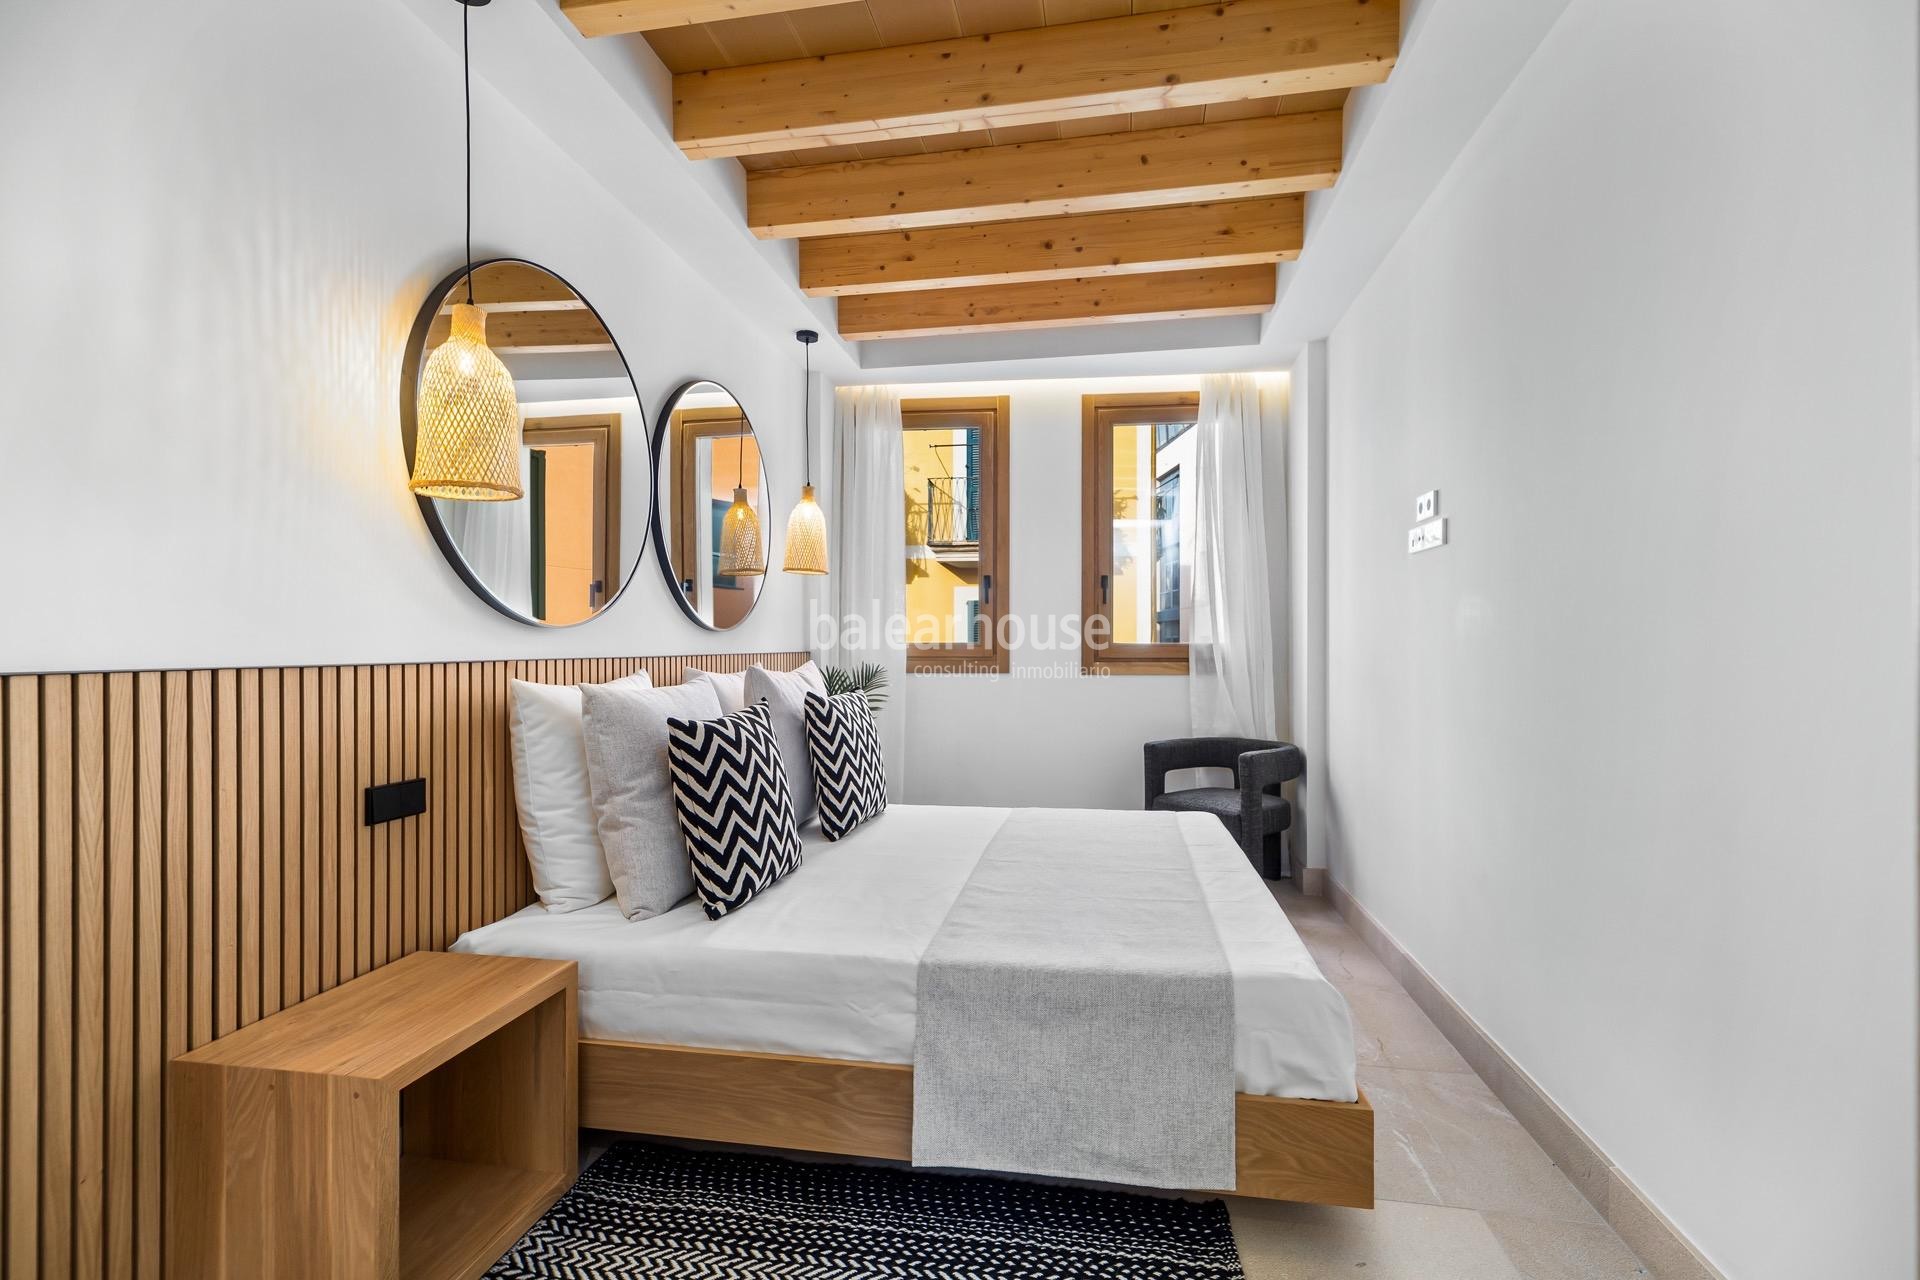 Exclusividad,diseño y tradición en esta magnífica casa nueva ubicada en el centro histórico de Palma